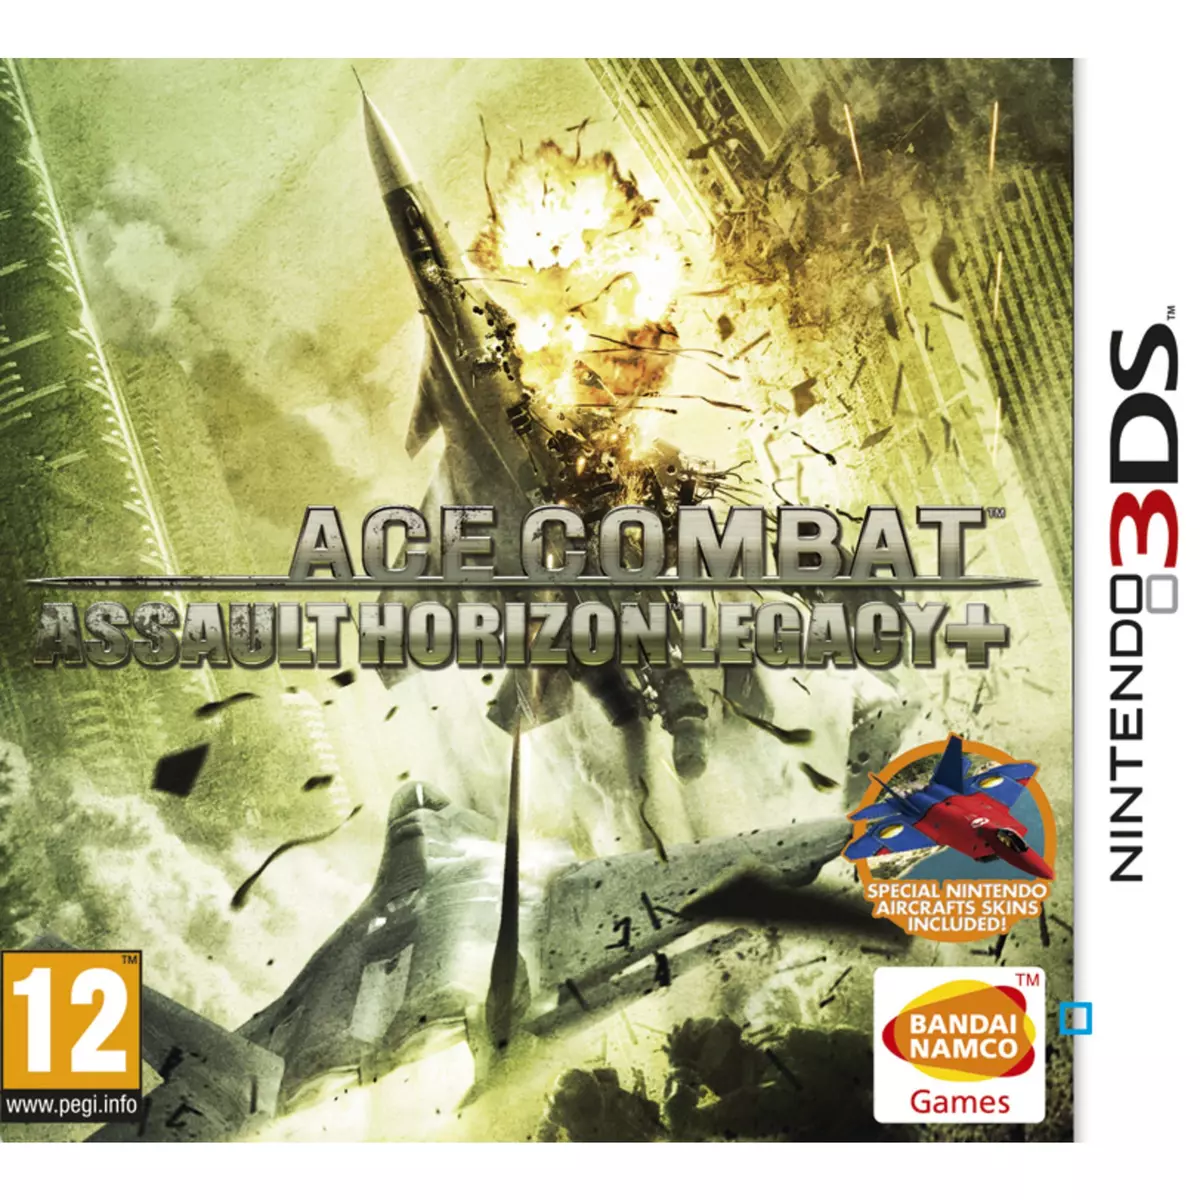 Ace Combat : Assault Horizon Legacy + 3DS